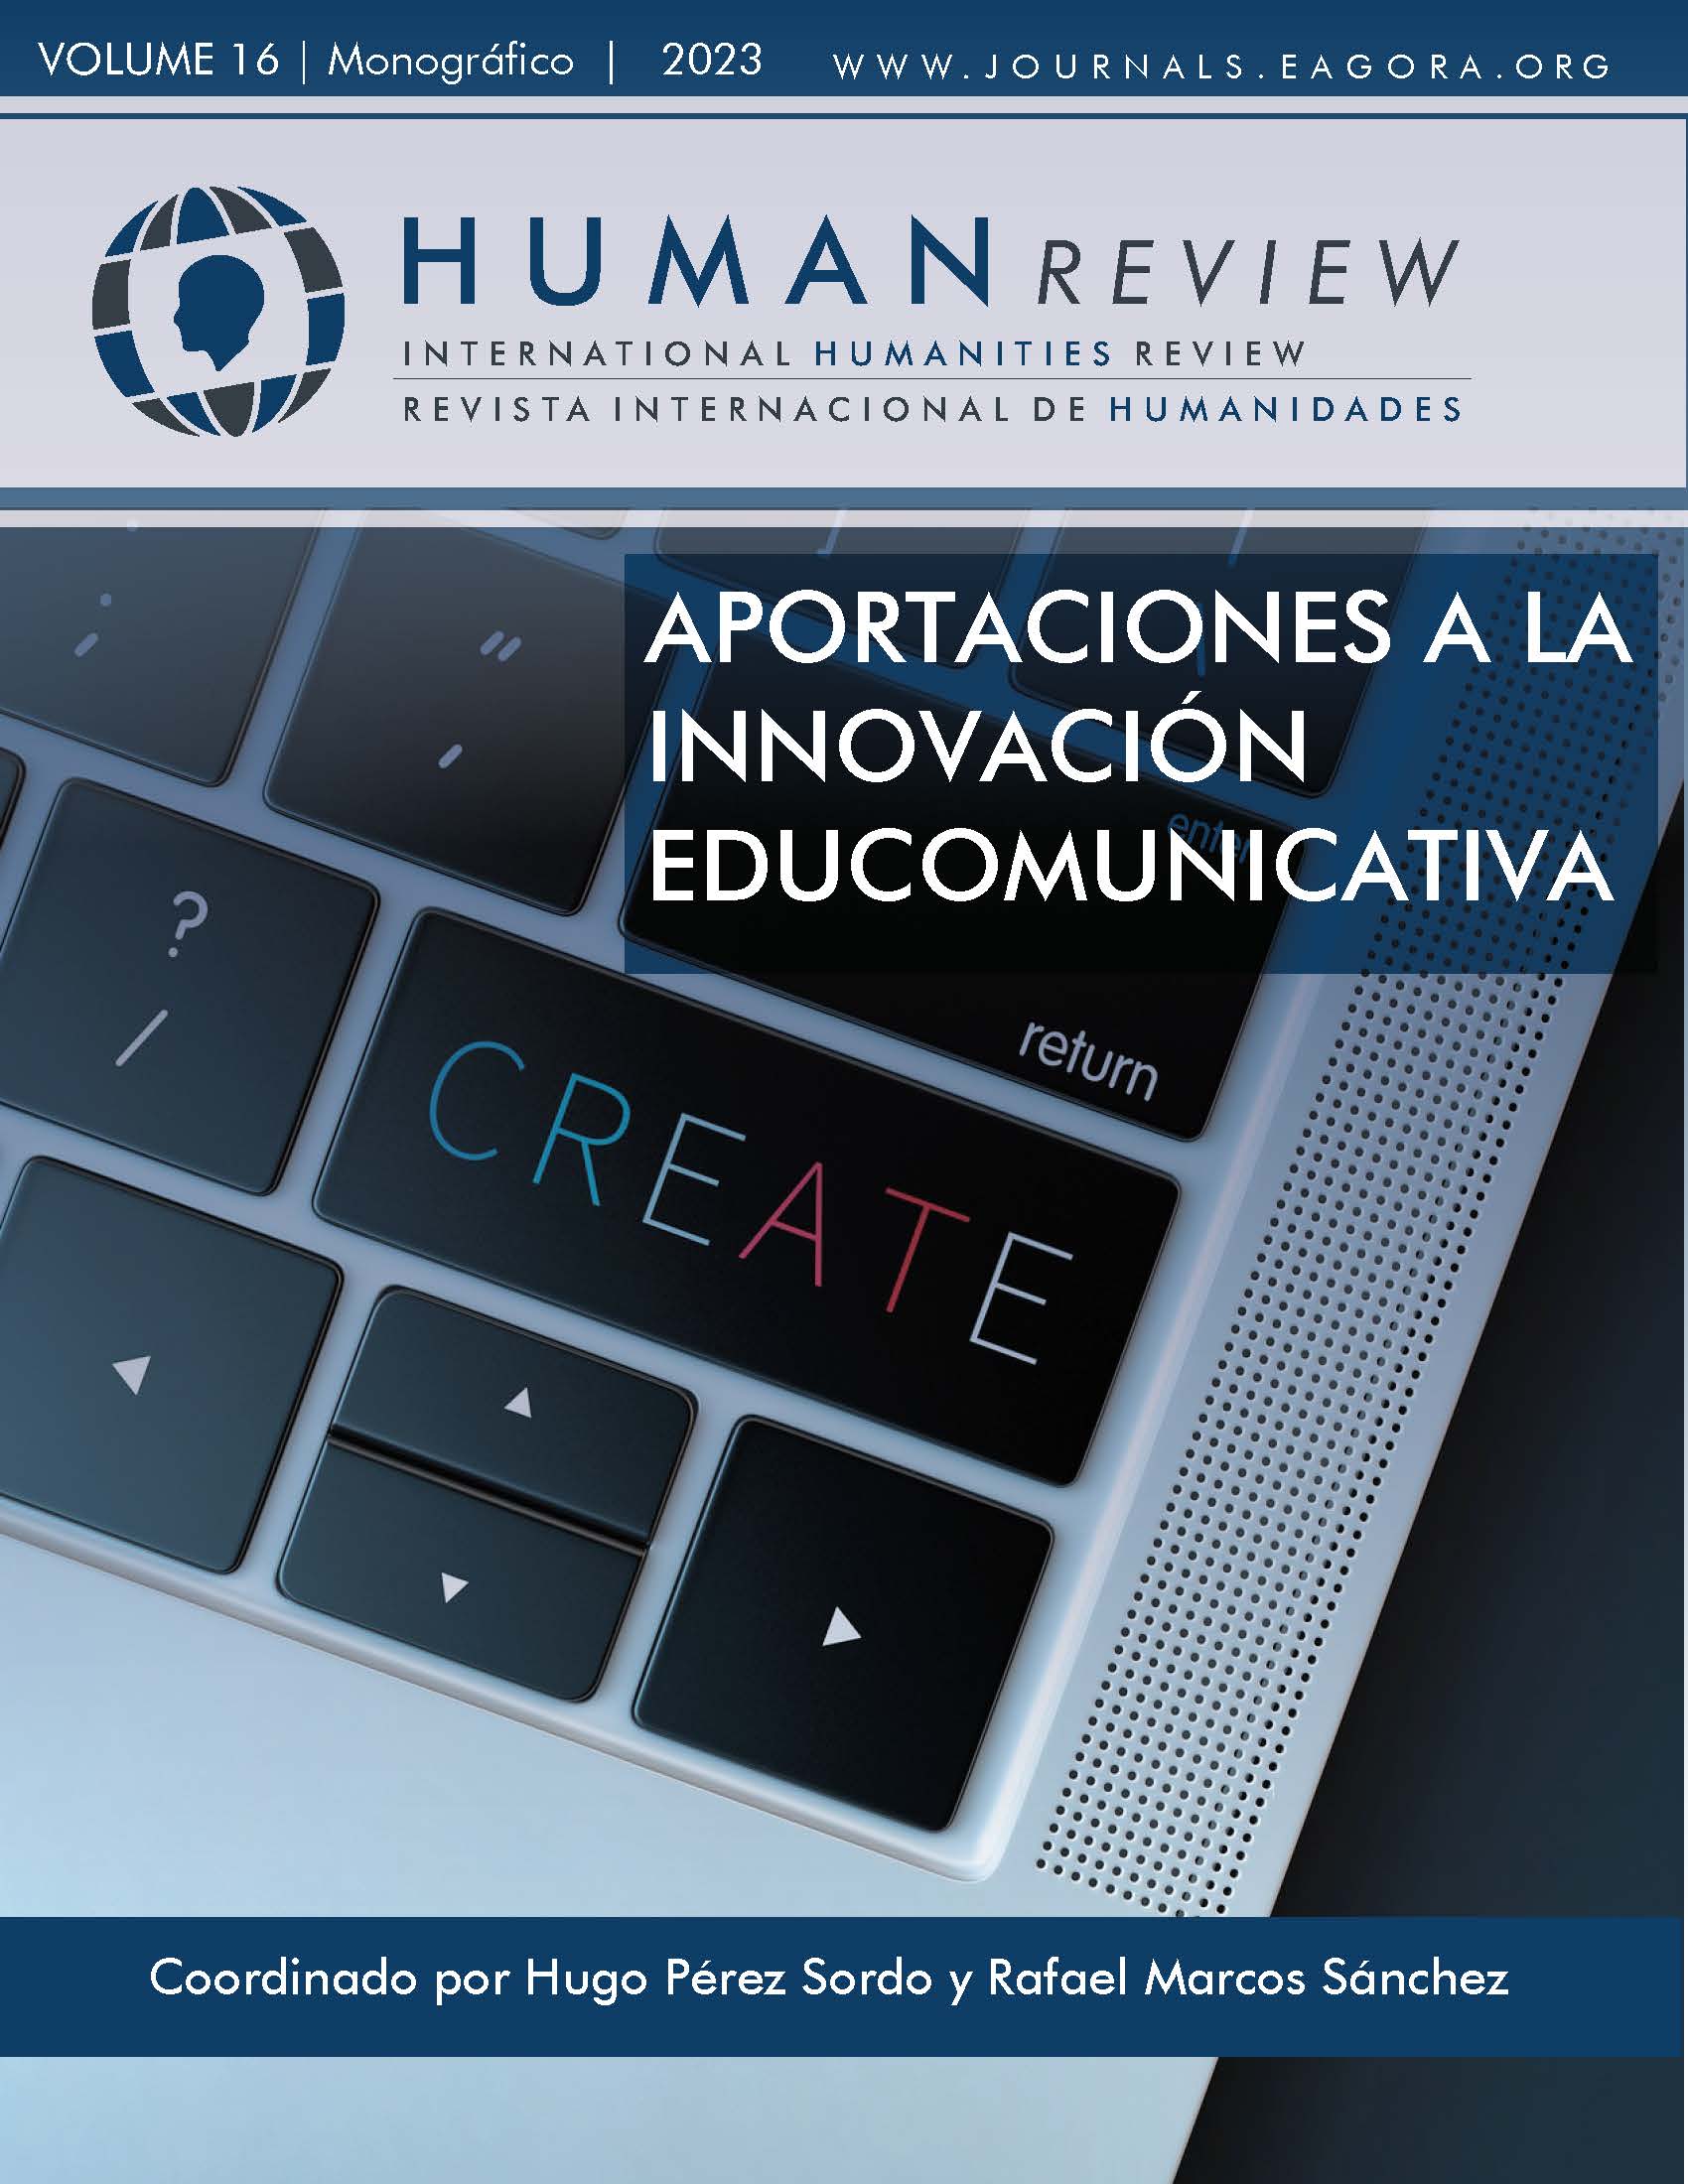 					Ver Vol. 16 Núm. 5 (2023): Monográfico: "Aportaciones a la innovación educomunicativa"
				